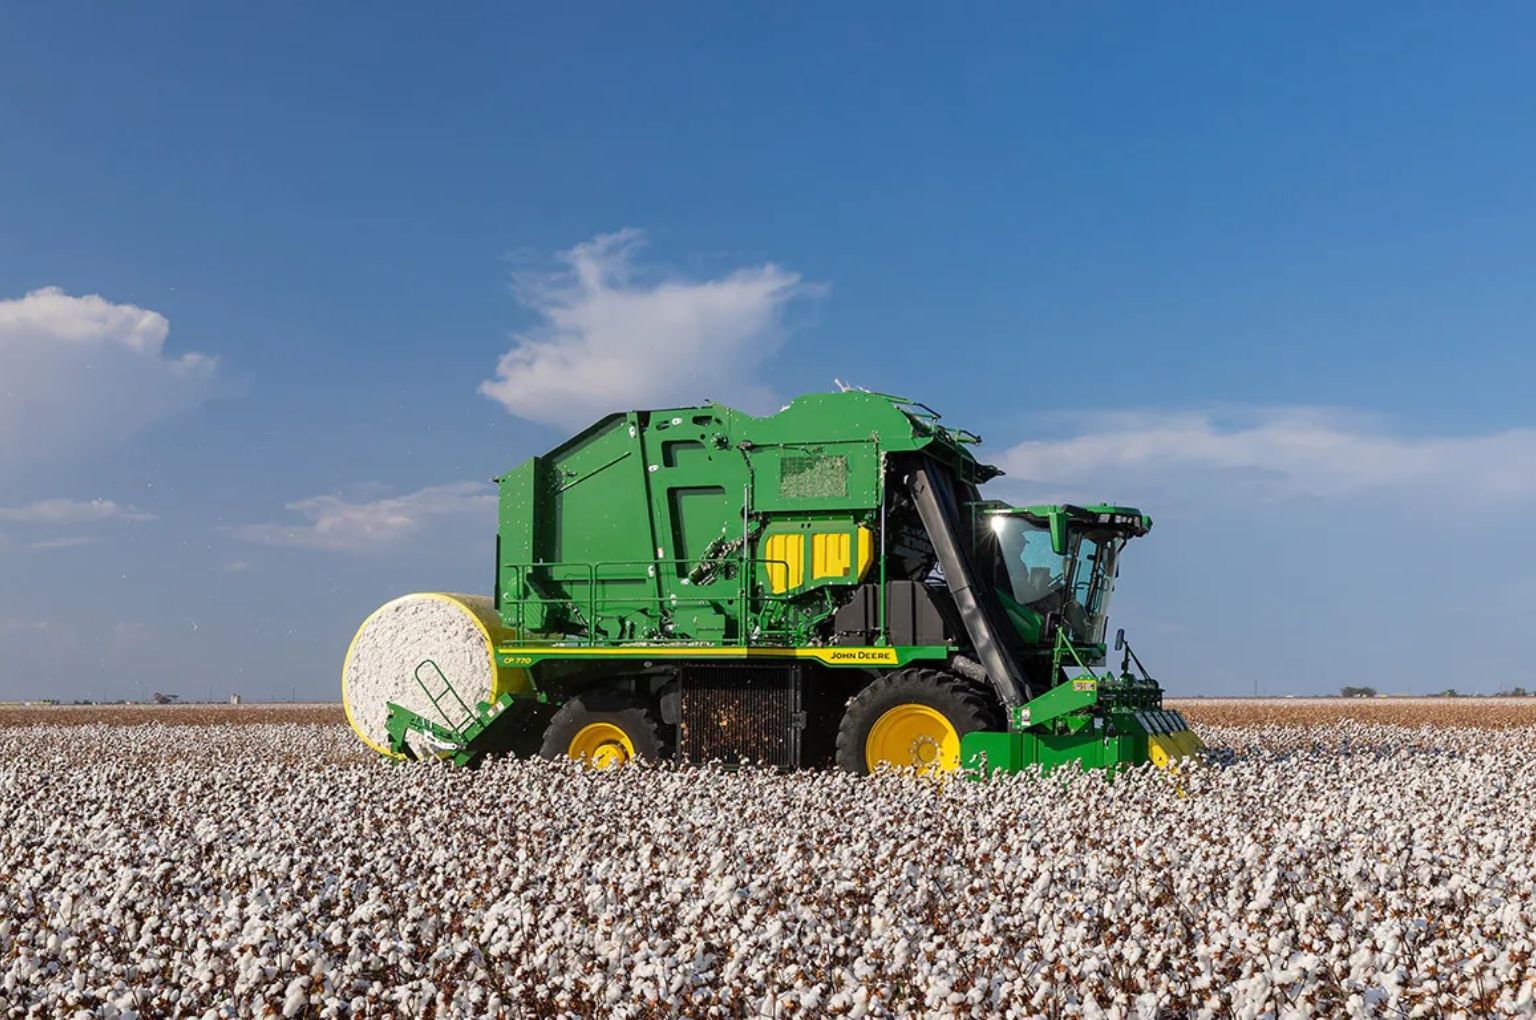 John Deere cotton harvester